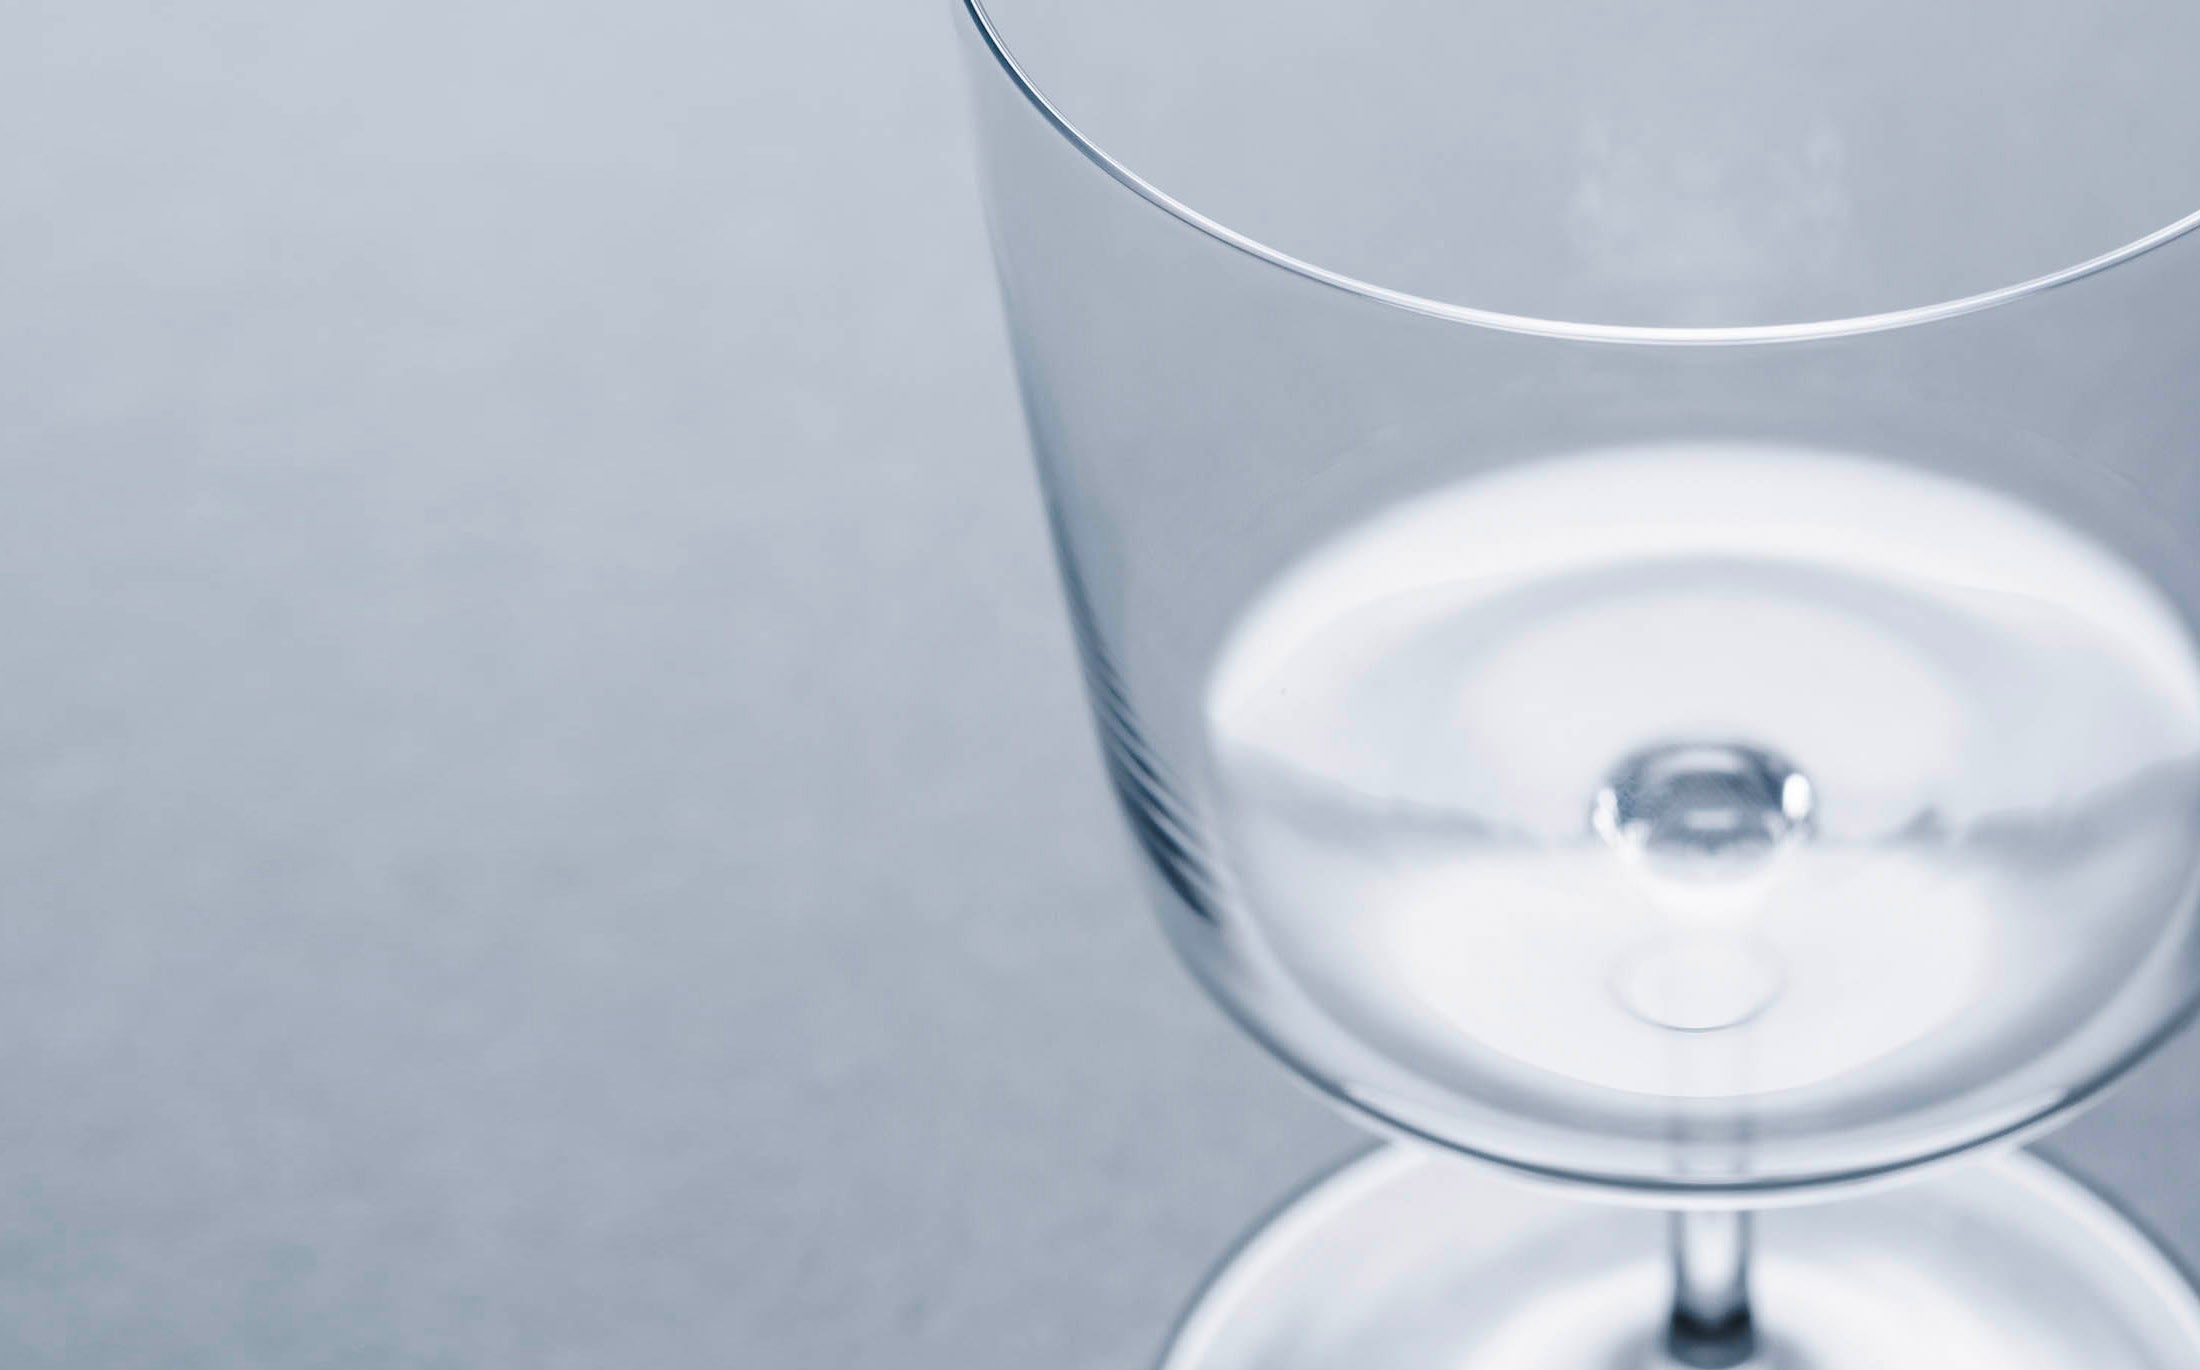 Raisin - Glass "Water"